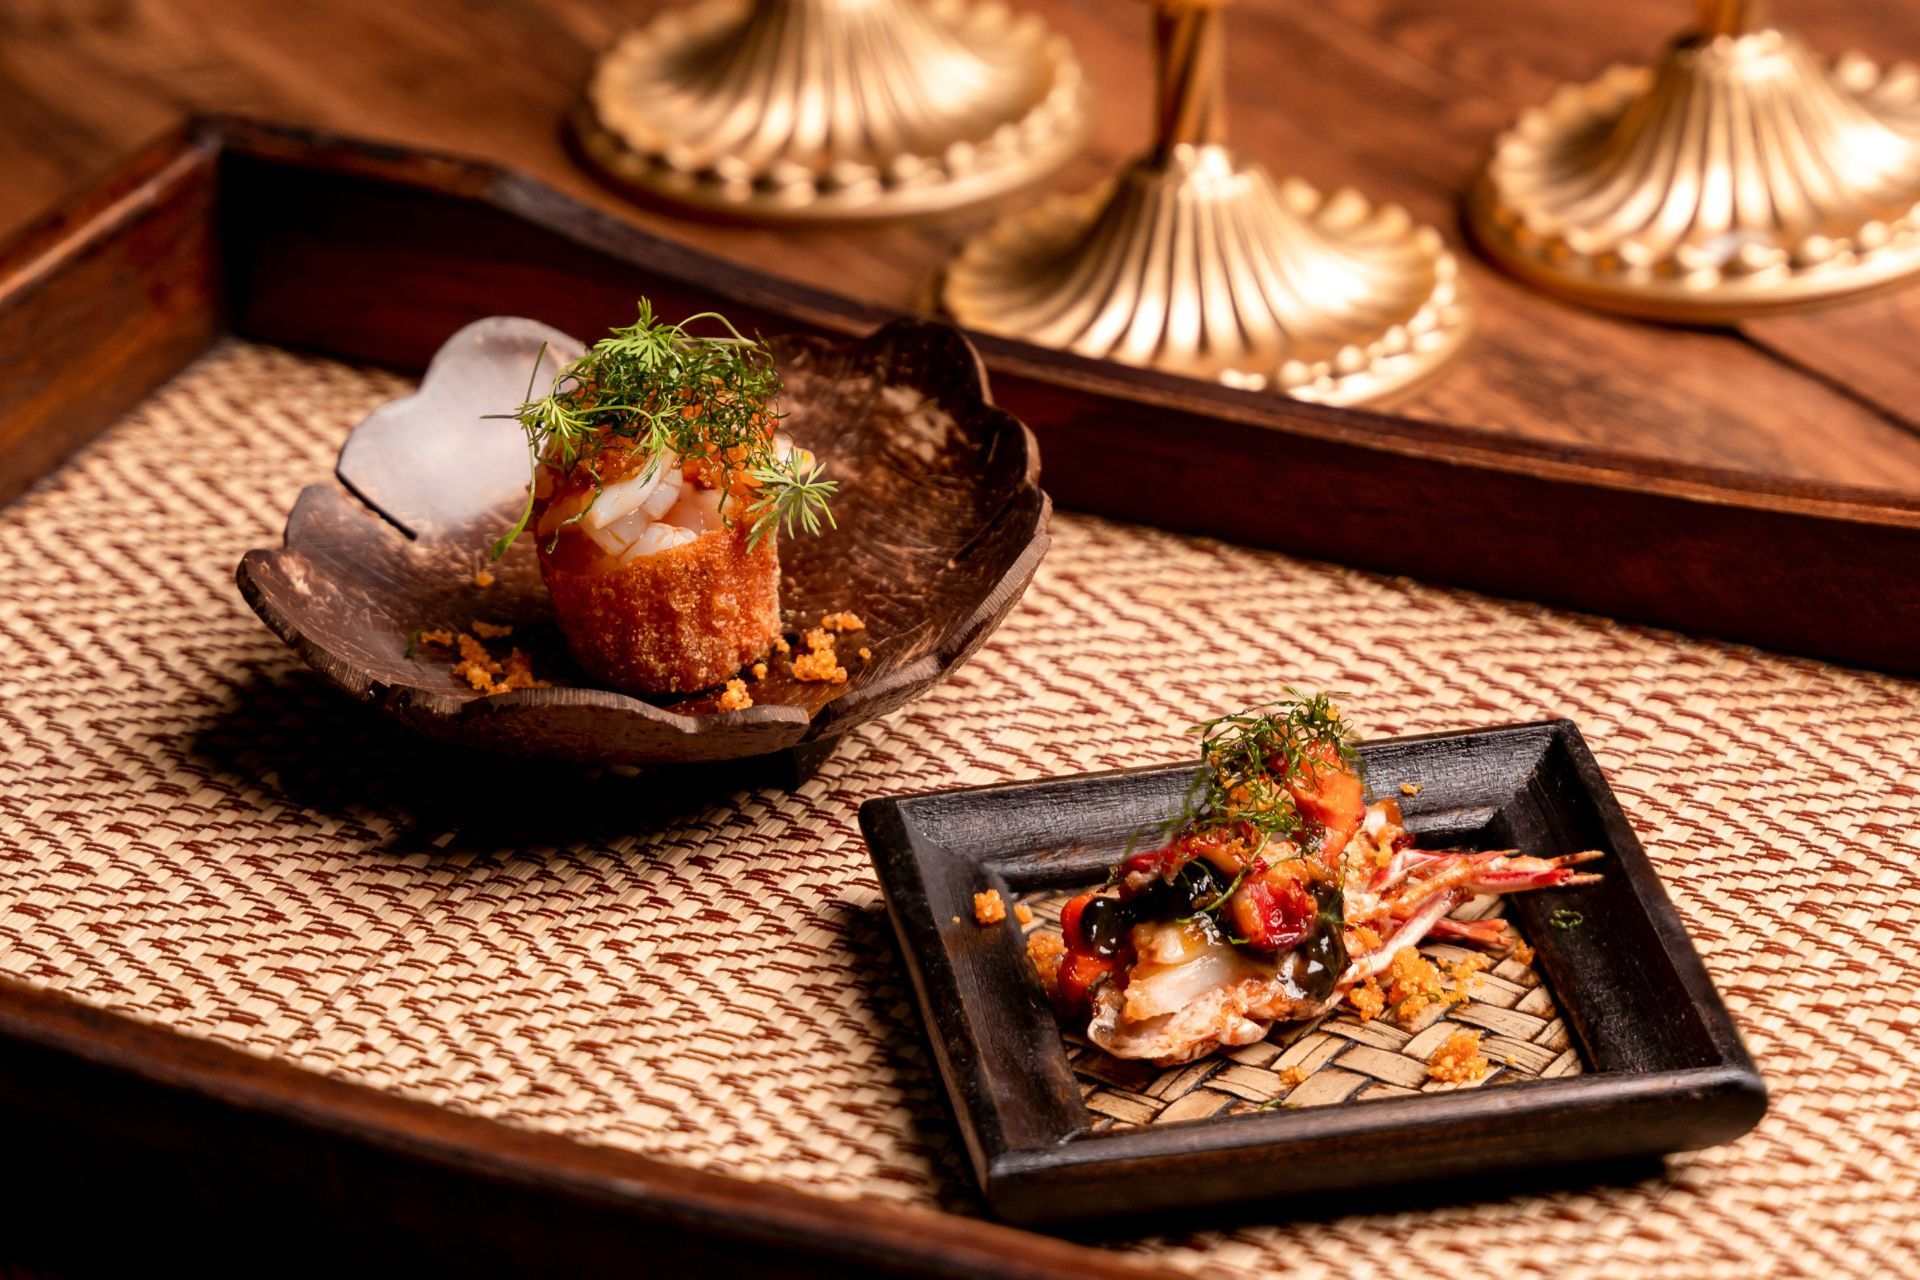 Three Tokyo restaurants are in the World's 50 Best Restaurants 2021 list